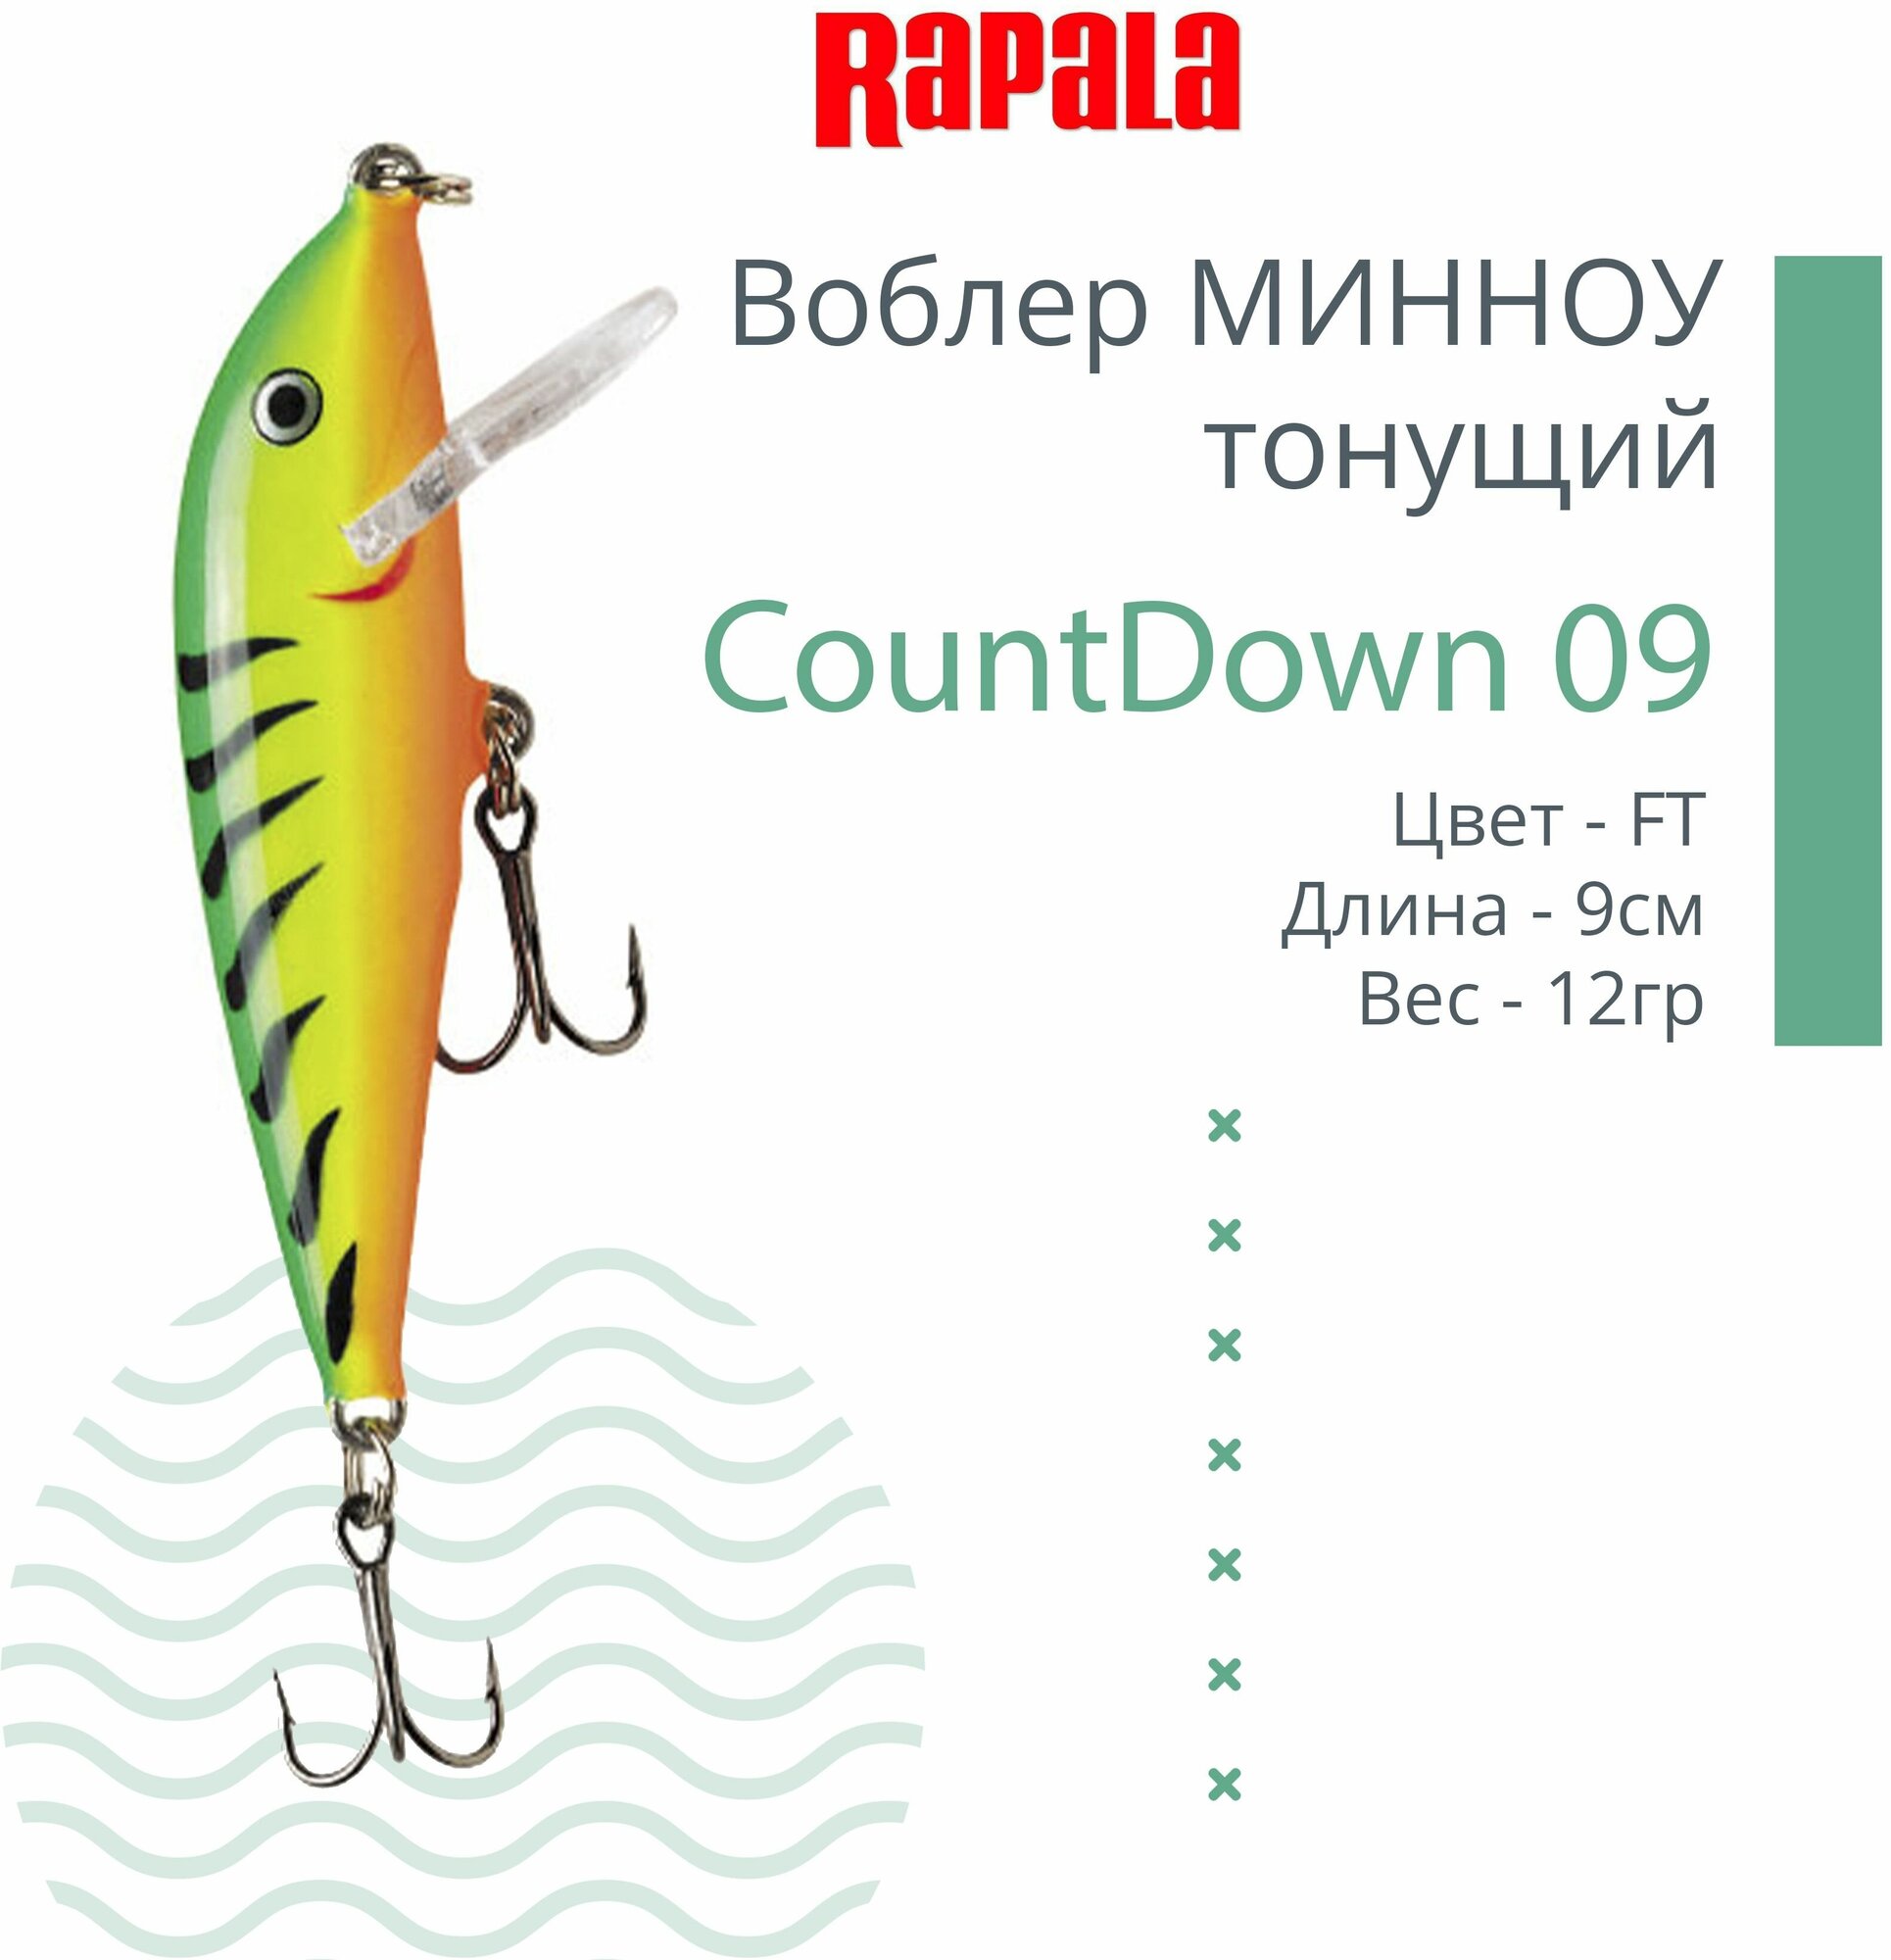 Воблер для рыбалки RAPALA CountDown 09 , 9см, 12г, цвет FT, тонущий